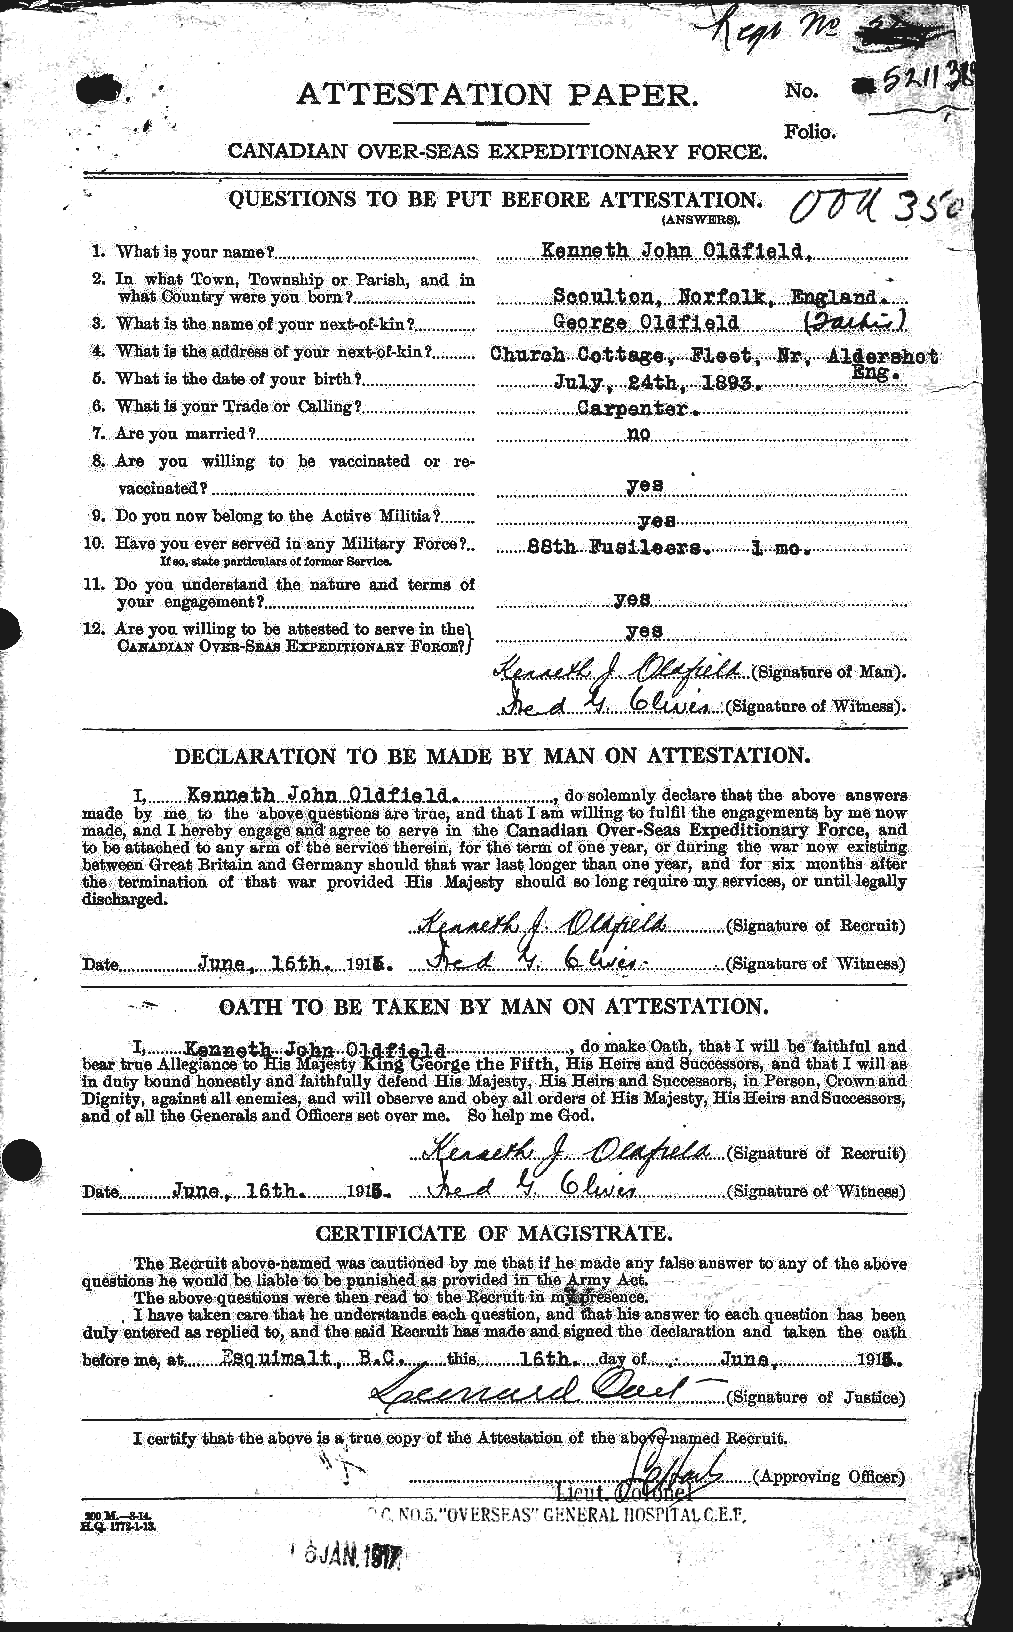 Dossiers du Personnel de la Première Guerre mondiale - CEC 556958a